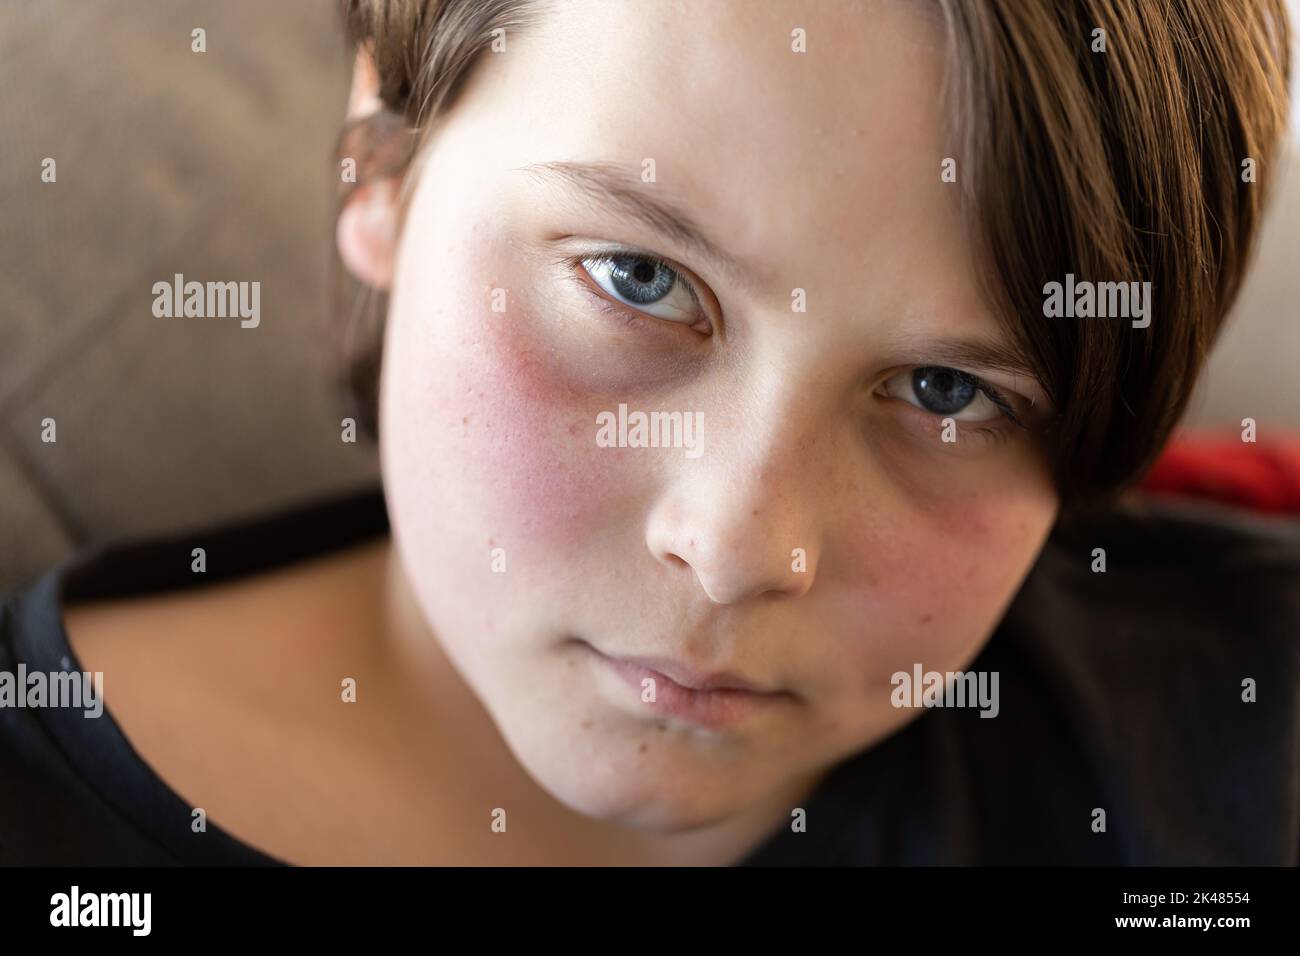 Un ragazzo malmeno sdraiato su un divano che guarda la telecamera, le guance sono rosse da una febbre e sembra miserabile Foto Stock